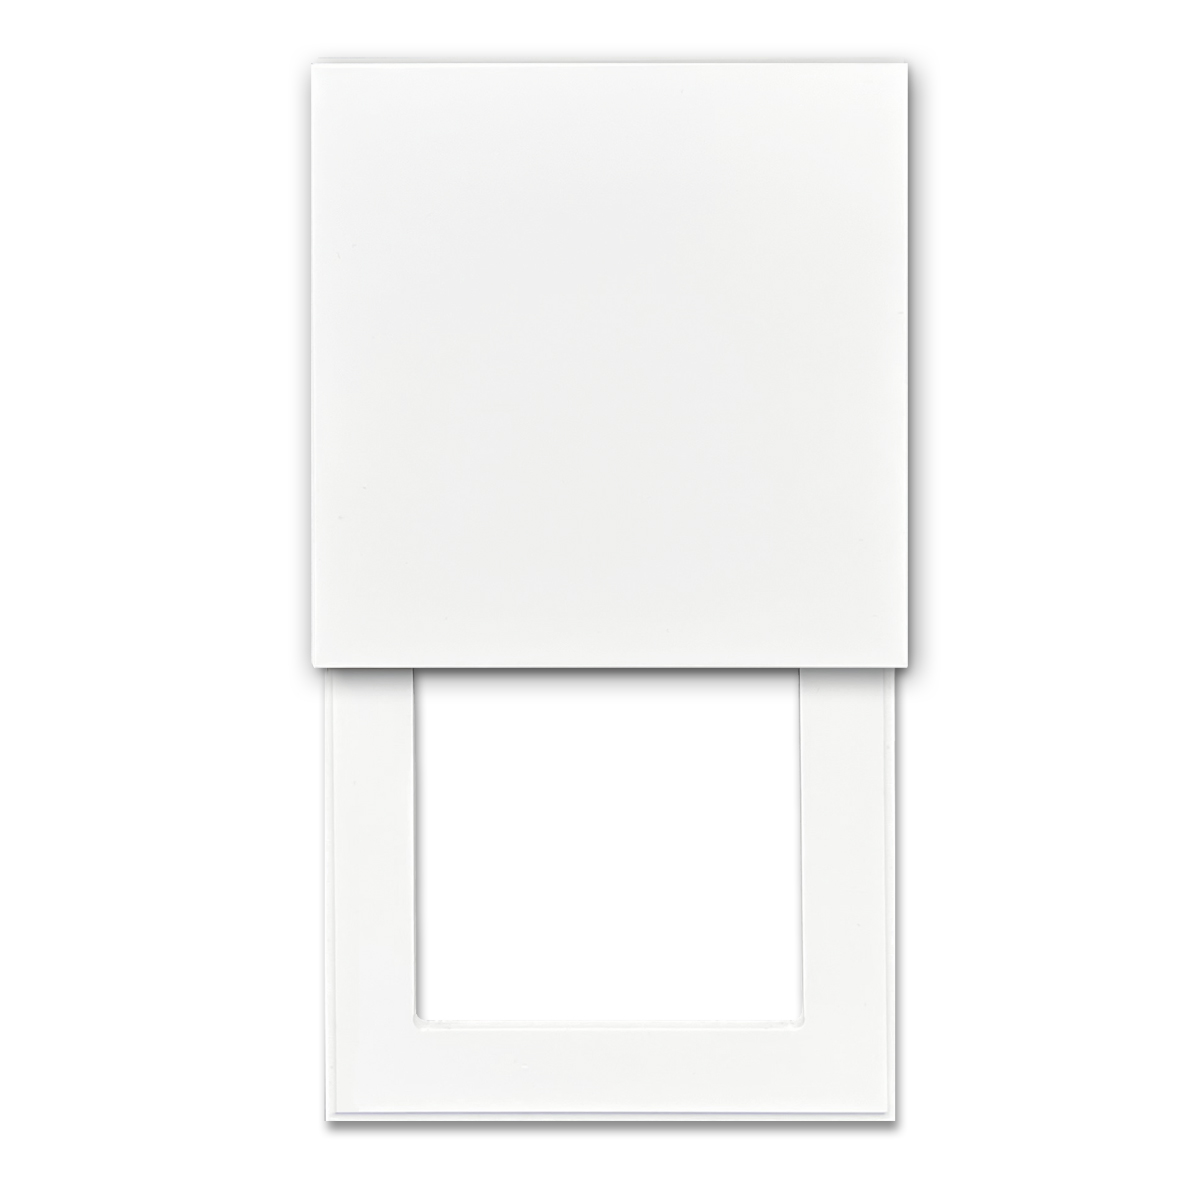 Frameset voor:  1 onzichtbare wandcontactdoos, alpine wit. Design wandcontactdoos voor keukens en verfijnde woonruimtes.